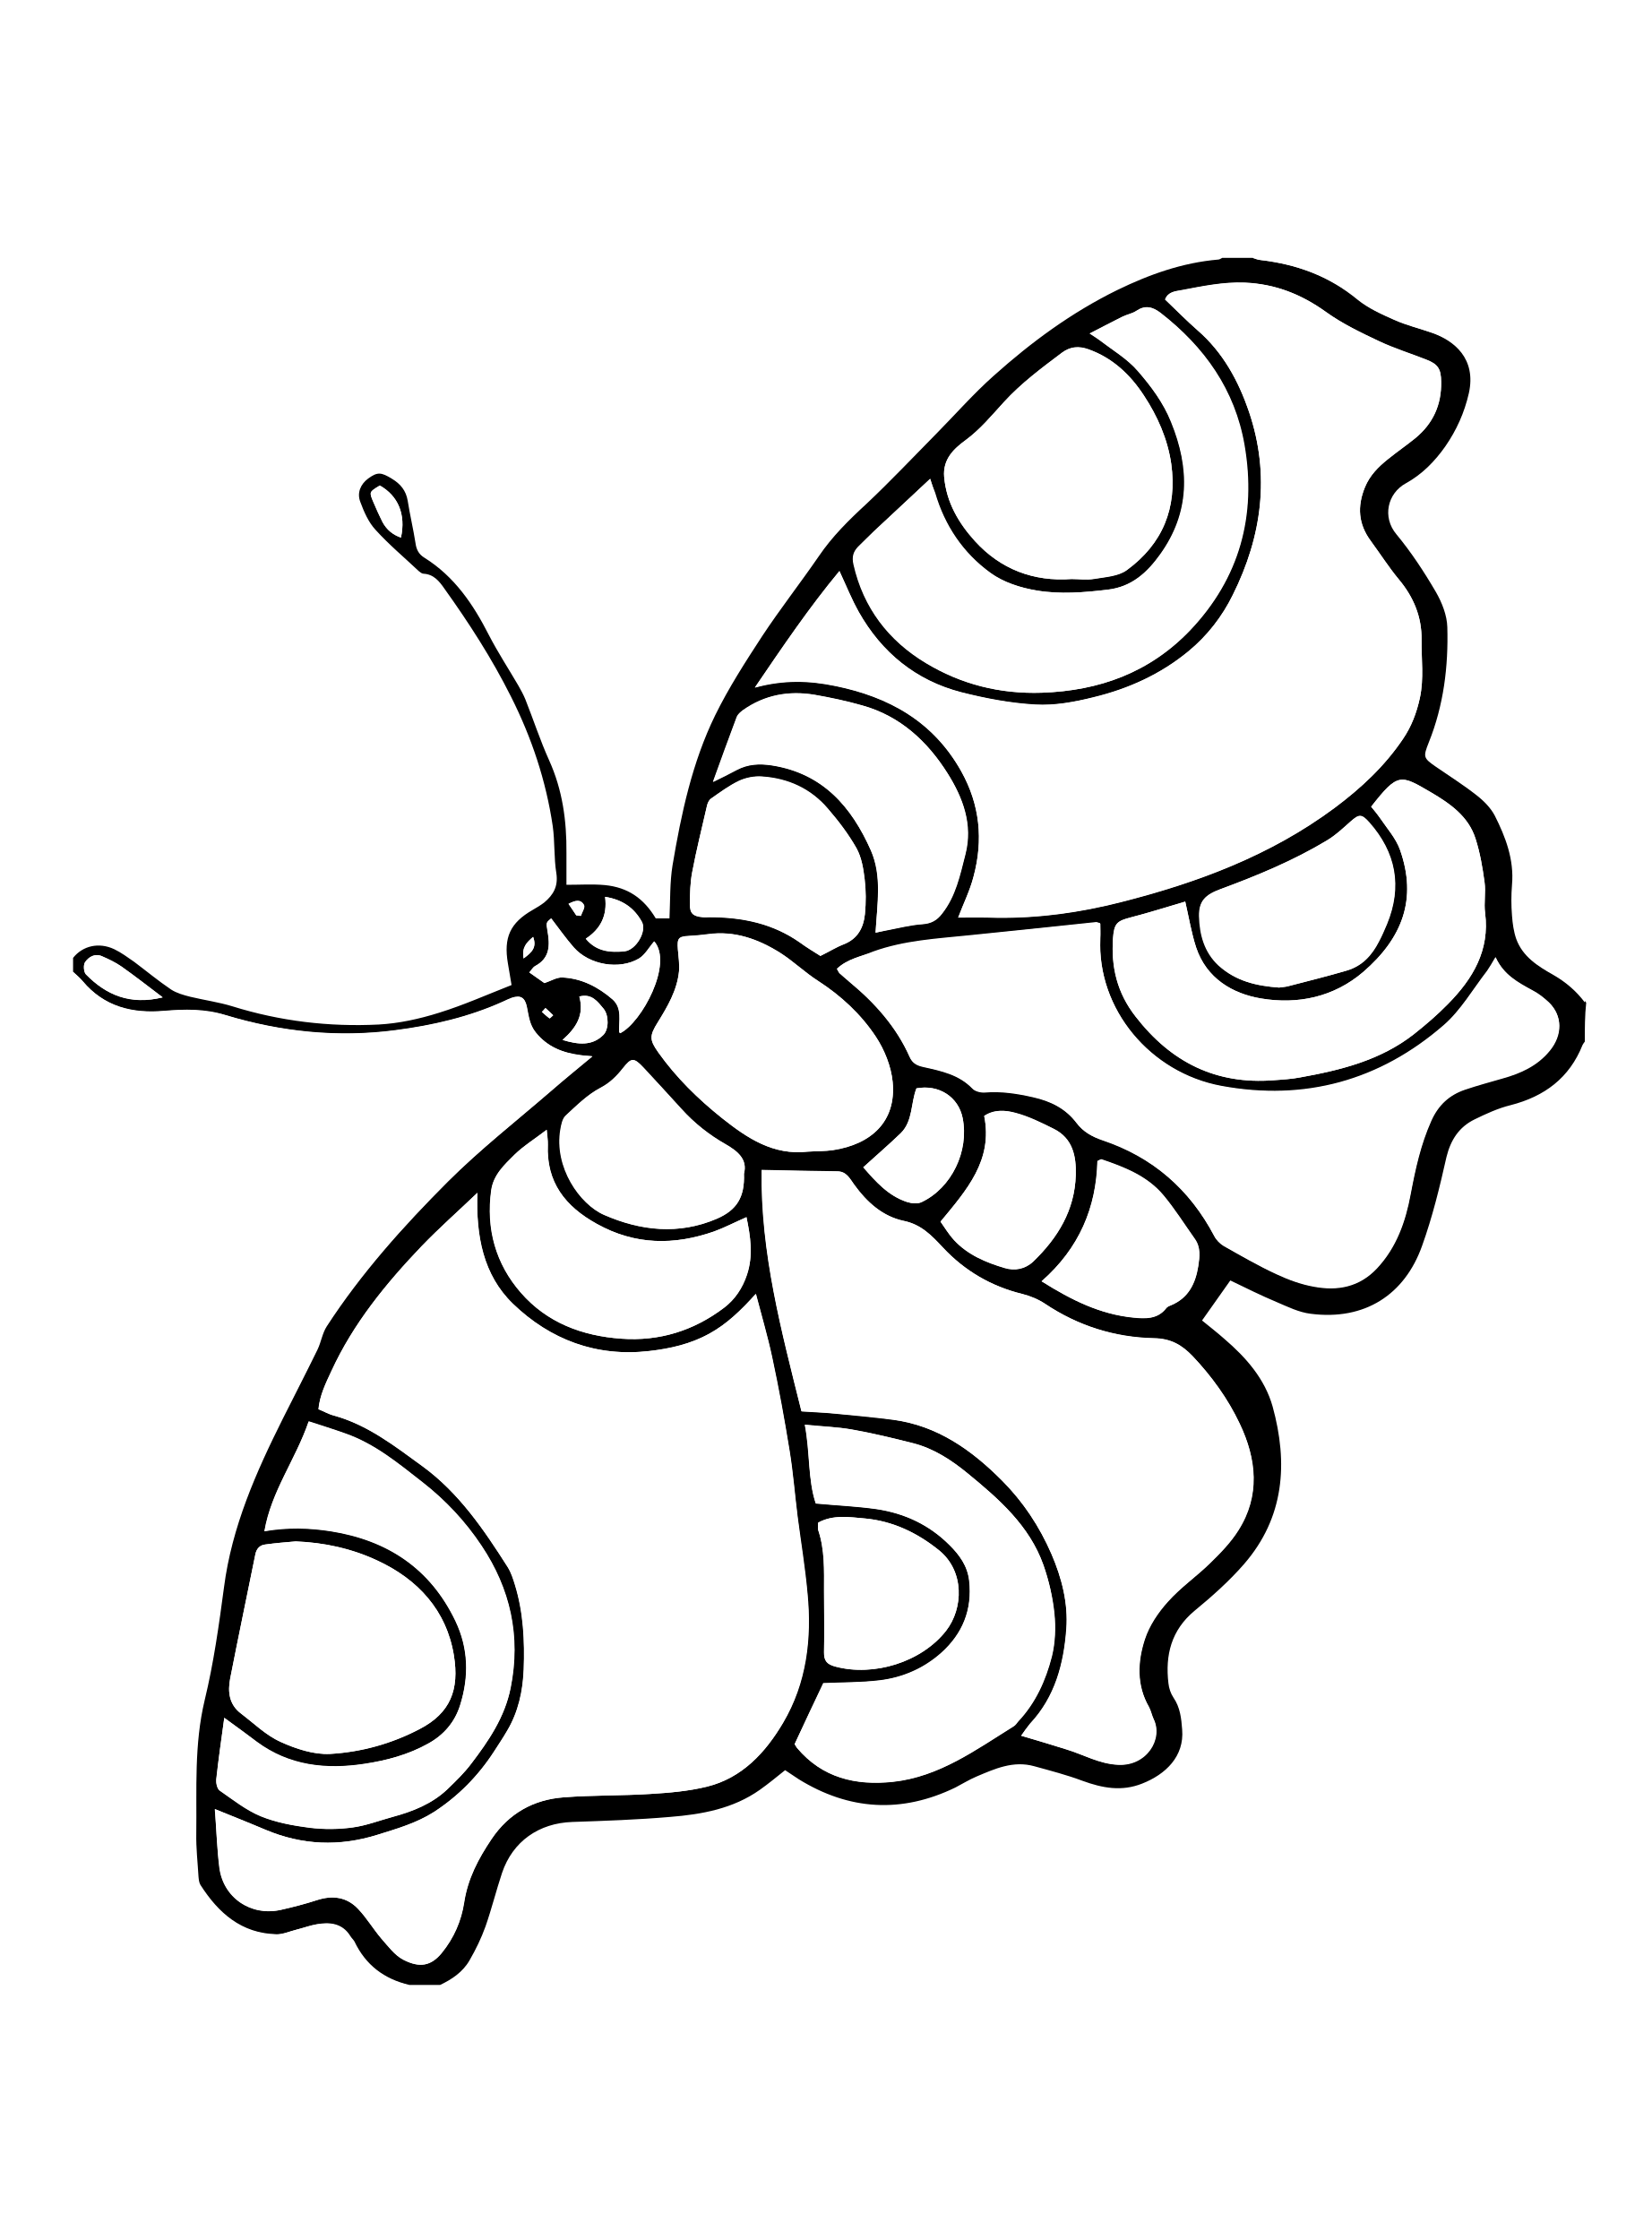 Раскраска насекомое ребенку 4 года. Насекомые. Раскраска. Насекомые раскраска для детей. Раскраска "бабочки". Раскраска насекомые для малышей.